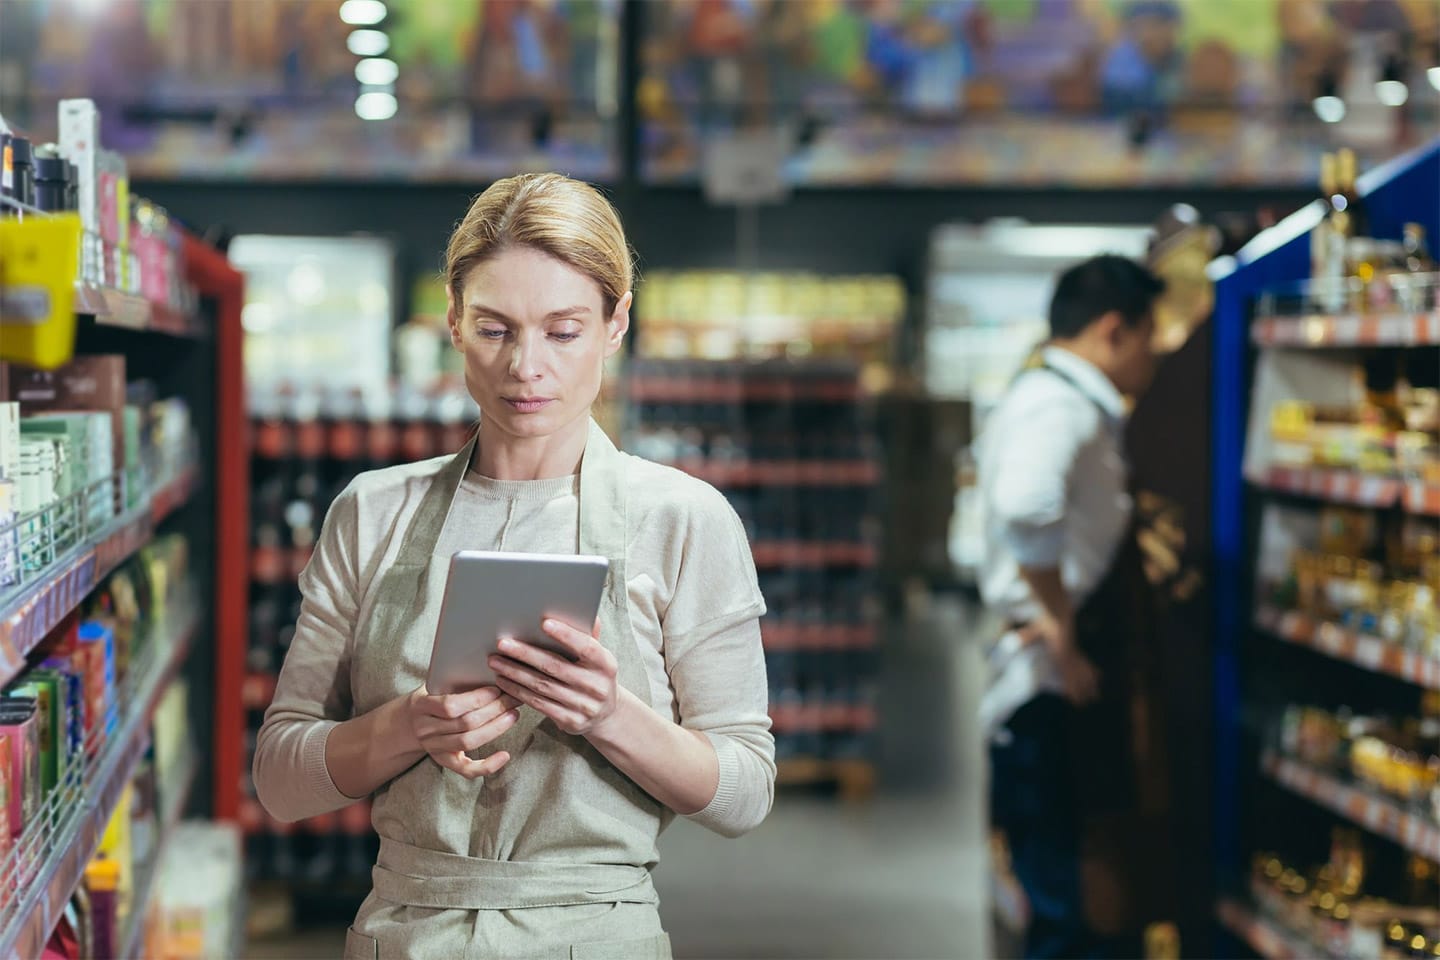 슈퍼마켓의 여성 관리자가 태블릿을 사용하여 재고 수량을 확인하고 있는 모습.